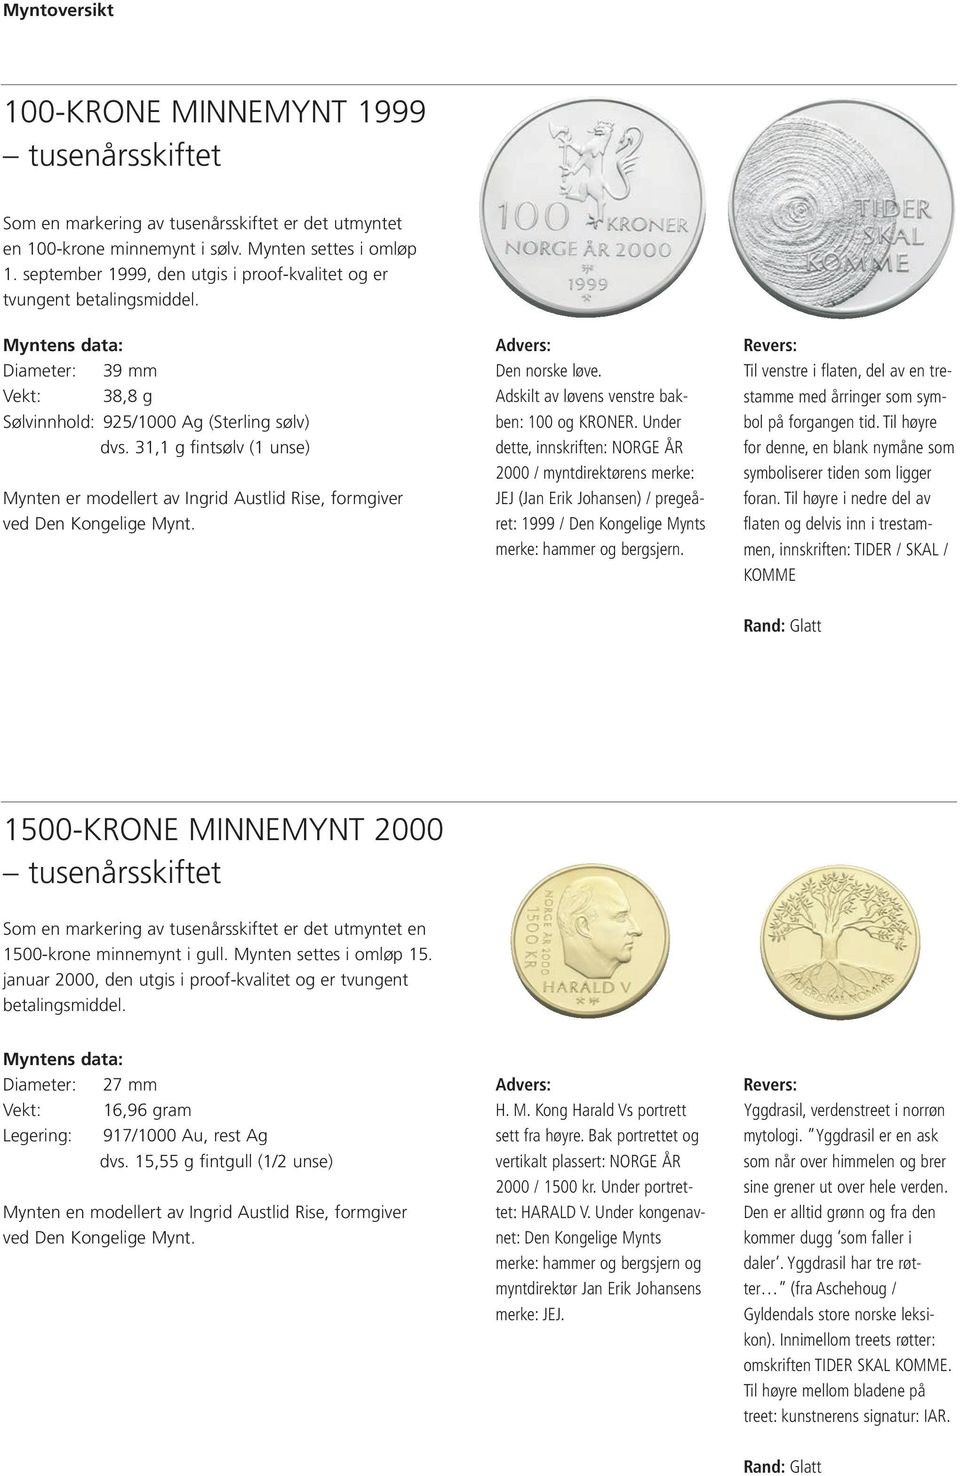 31,1 g fintsølv (1 unse) Mynten er modellert av Ingrid Austlid Rise, formgiver ved Den Kongelige Mynt. Den norske løve. Adskilt av løvens venstre bakben: 100 og KRONER.